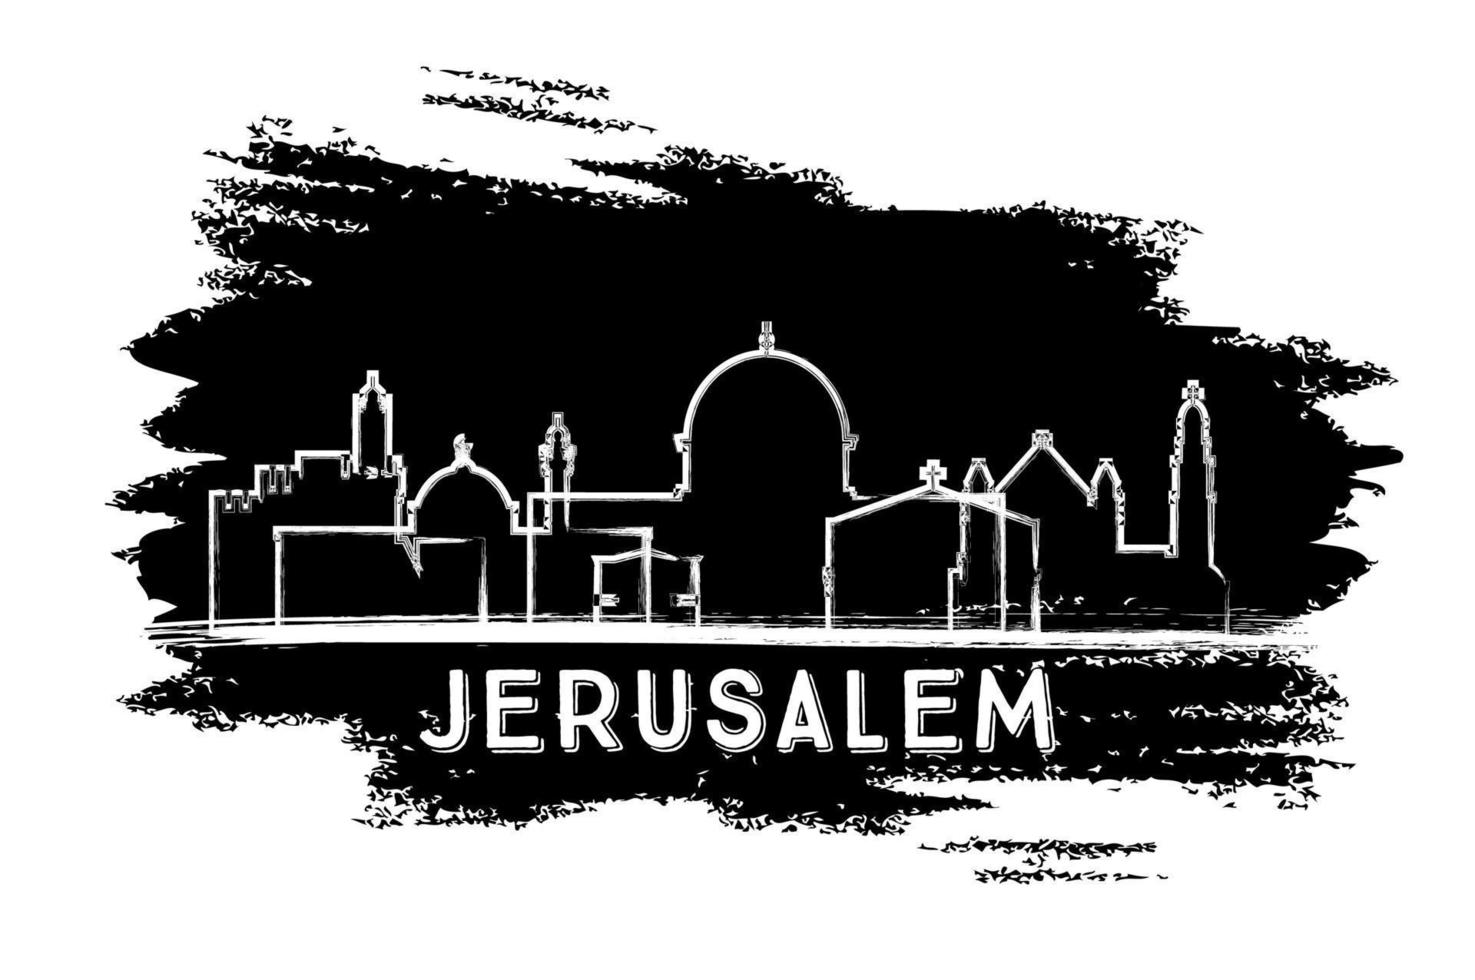 silueta del horizonte de la ciudad de jerusalén israel. boceto dibujado a mano. vector